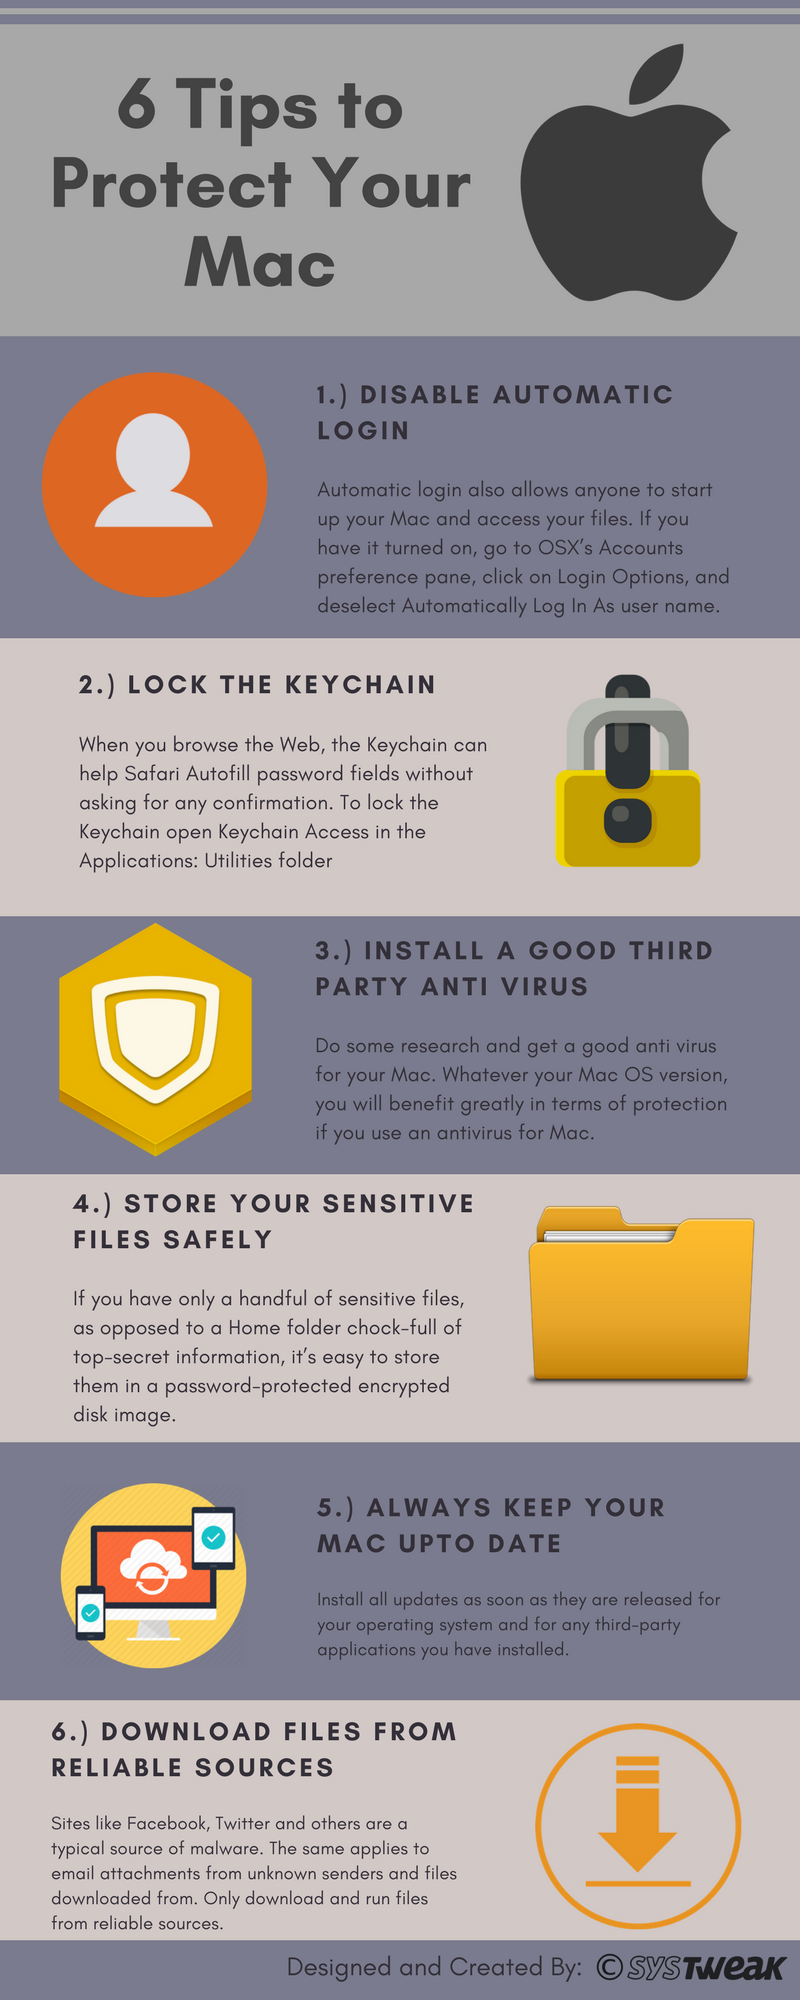 6 савета за заштиту вашег Мац-а – Инфографика